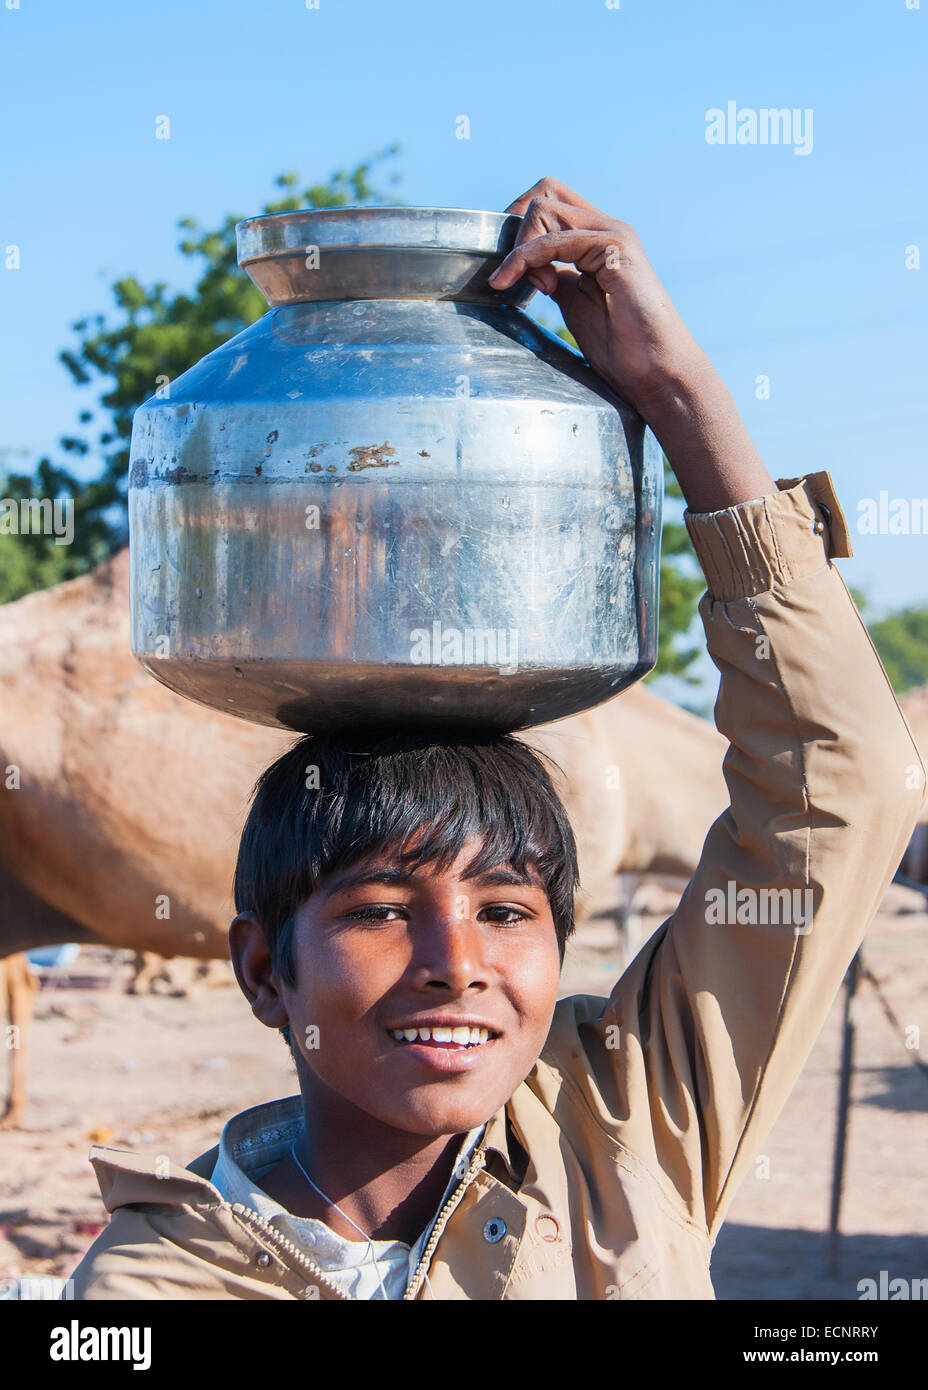 Junge mit Metall-Topf Wasser auf dem Kopf. Stockfoto